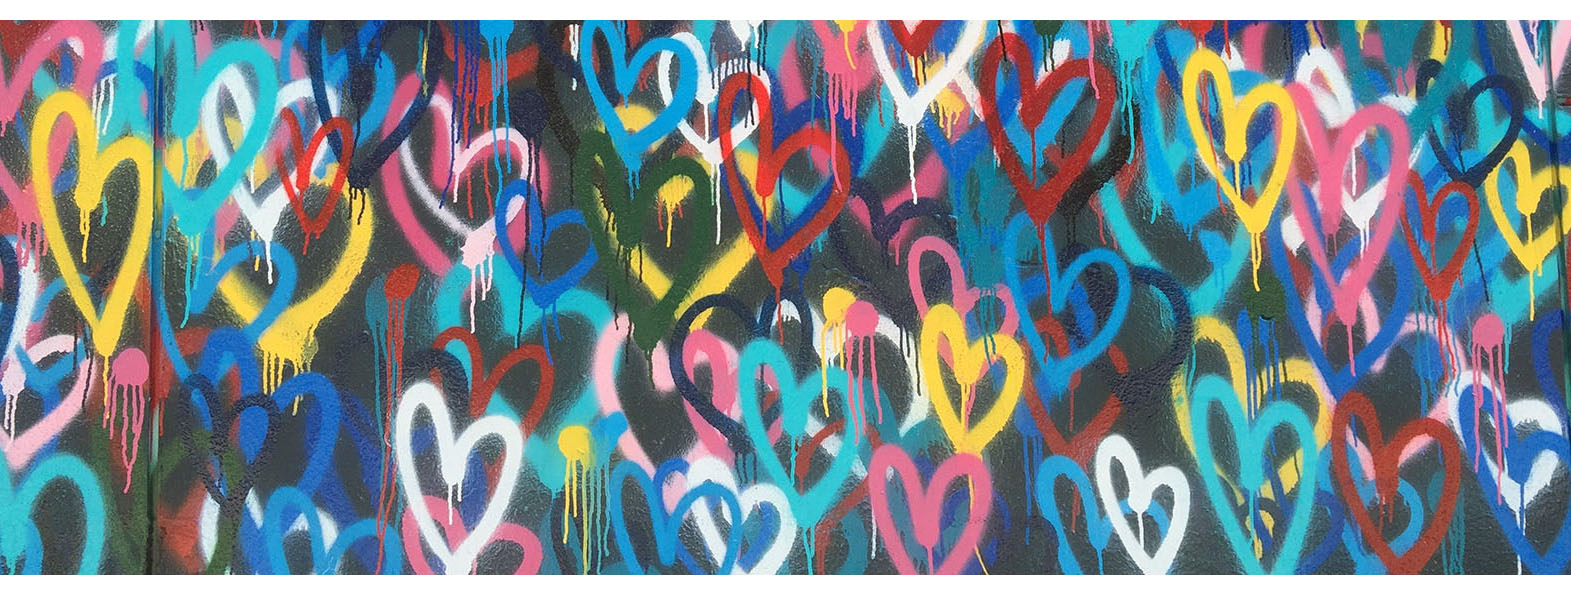 Graffiti hjärter i olika färger